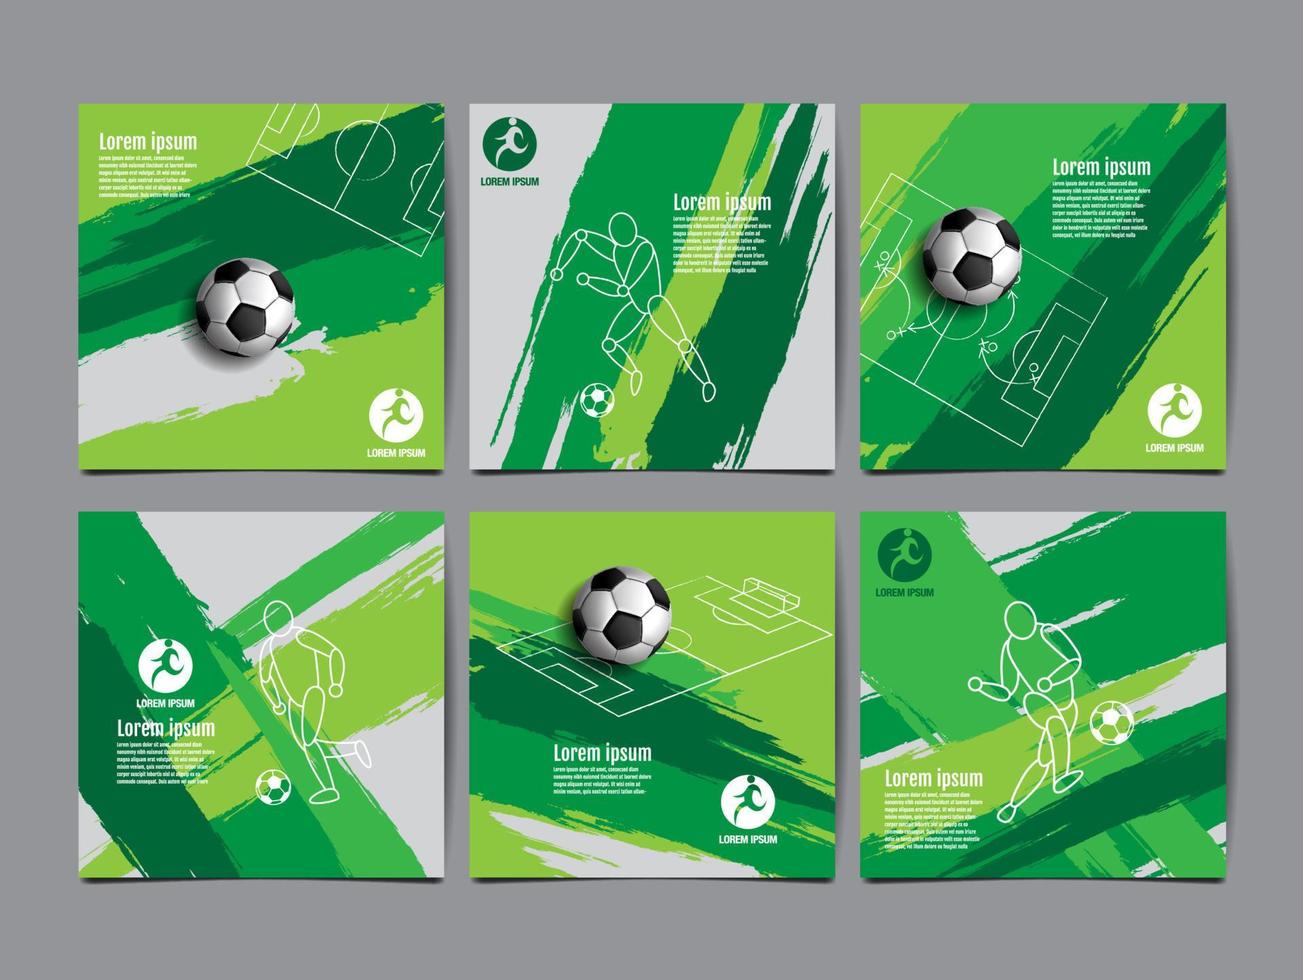 diseño de plantilla de fútbol, banner de fútbol, diseño de diseño deportivo, tema verde, ilustración vectorial vector